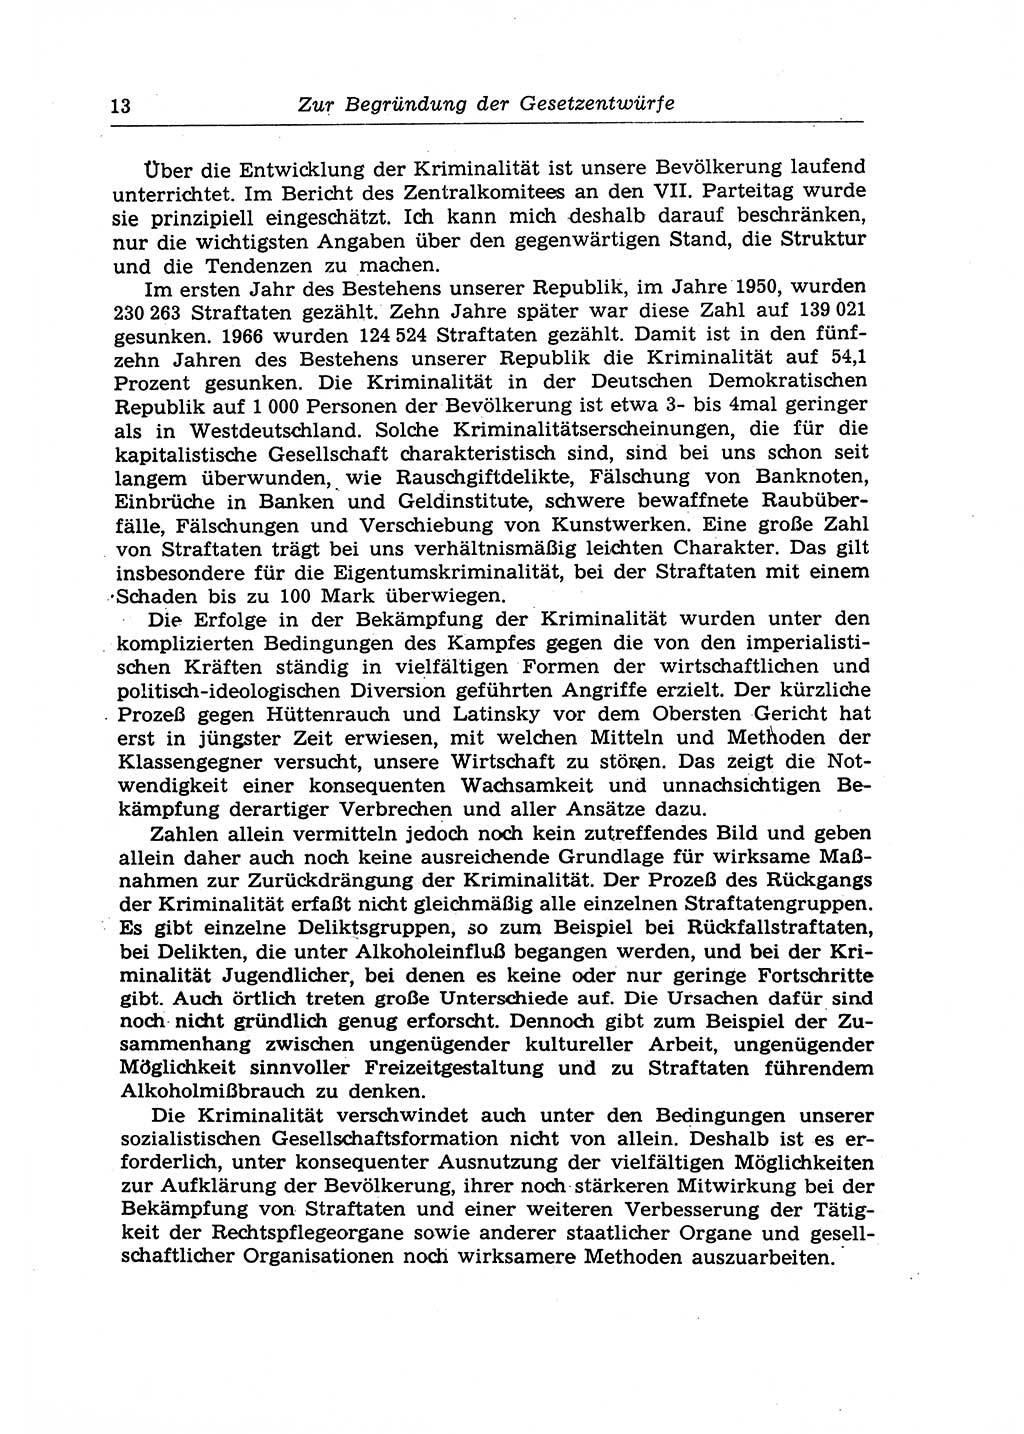 Strafrecht der Deutschen Demokratischen Republik (DDR), Lehrkommentar zum Strafgesetzbuch (StGB), Allgemeiner Teil 1970, Seite 13 (Strafr. DDR Lehrkomm. StGB AT 1970, S. 13)